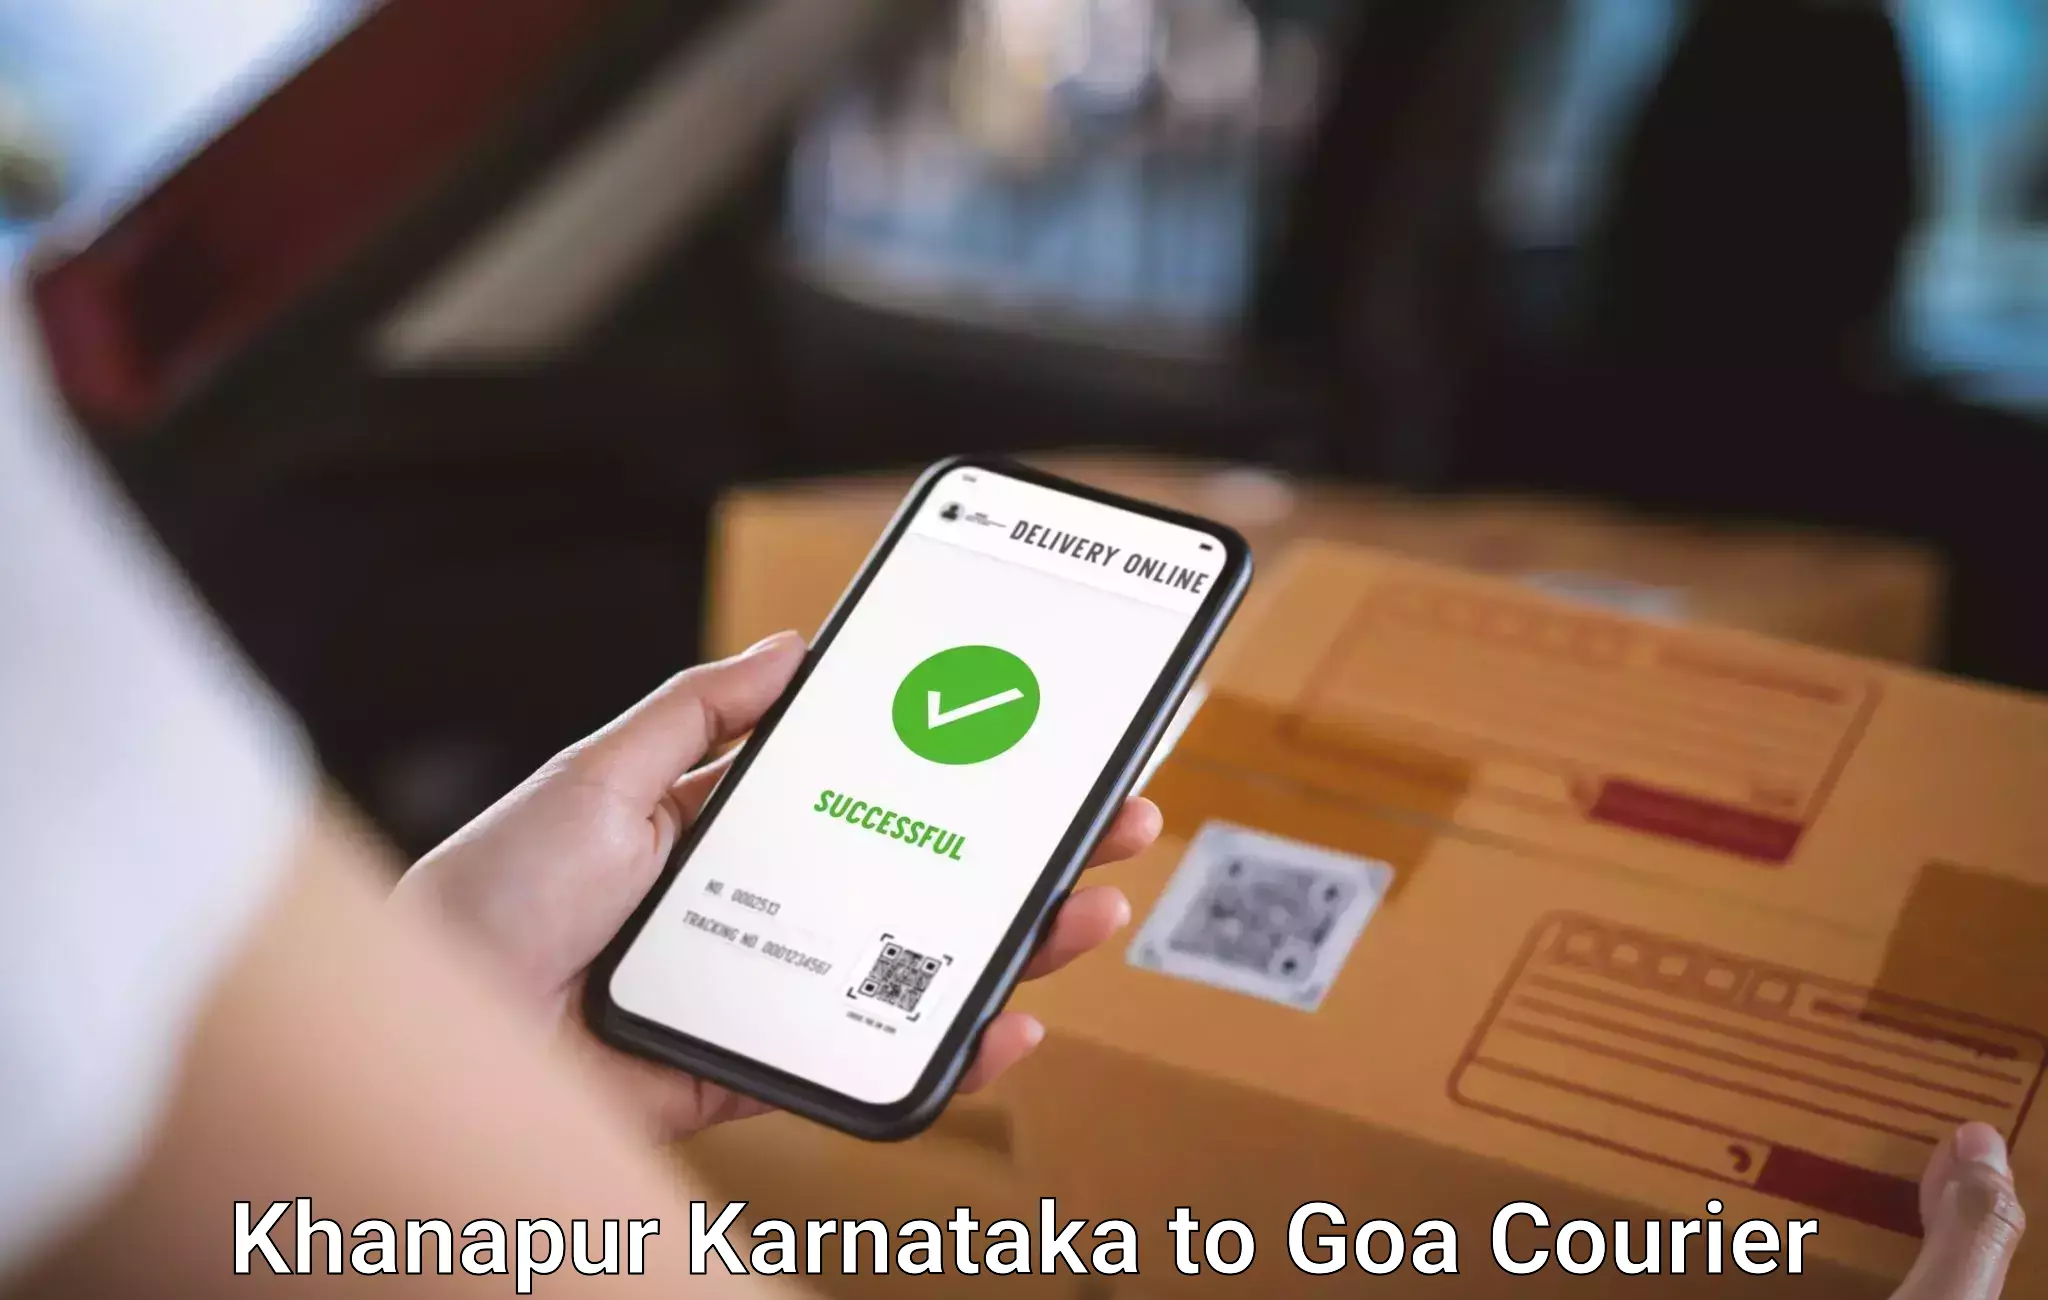 Baggage transport scheduler Khanapur Karnataka to Ponda